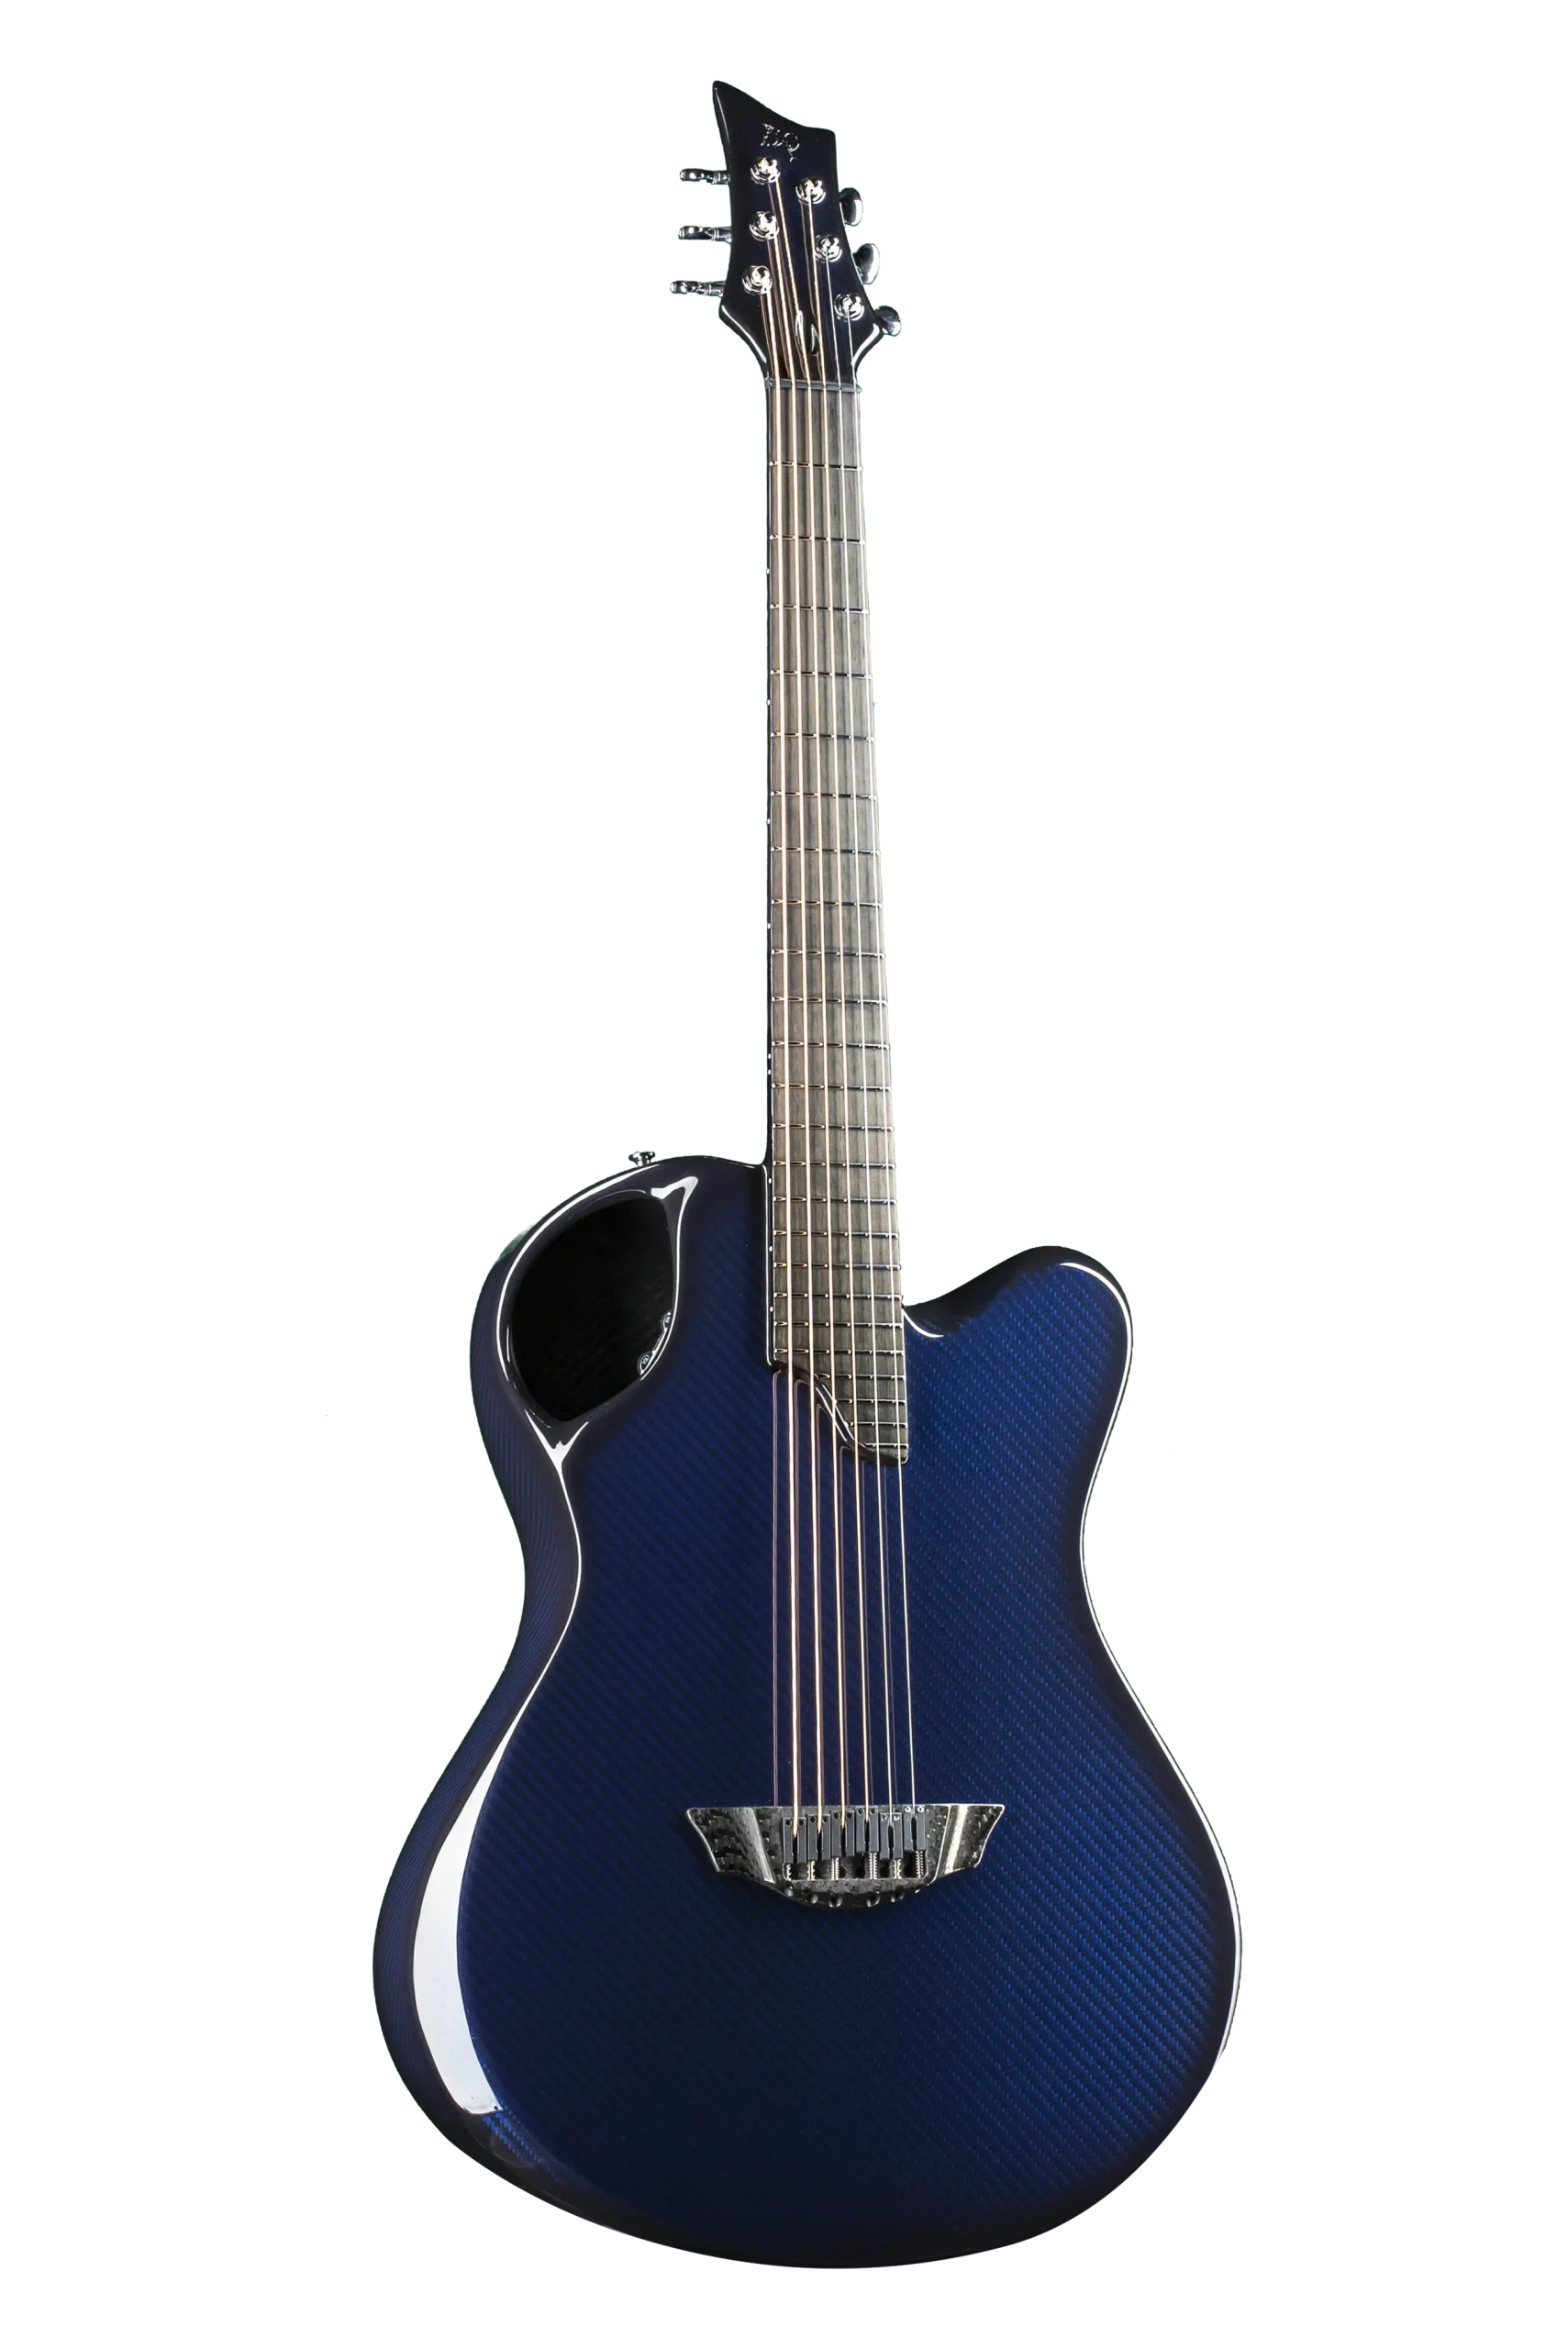 X20 Blue - Emerald Guitars